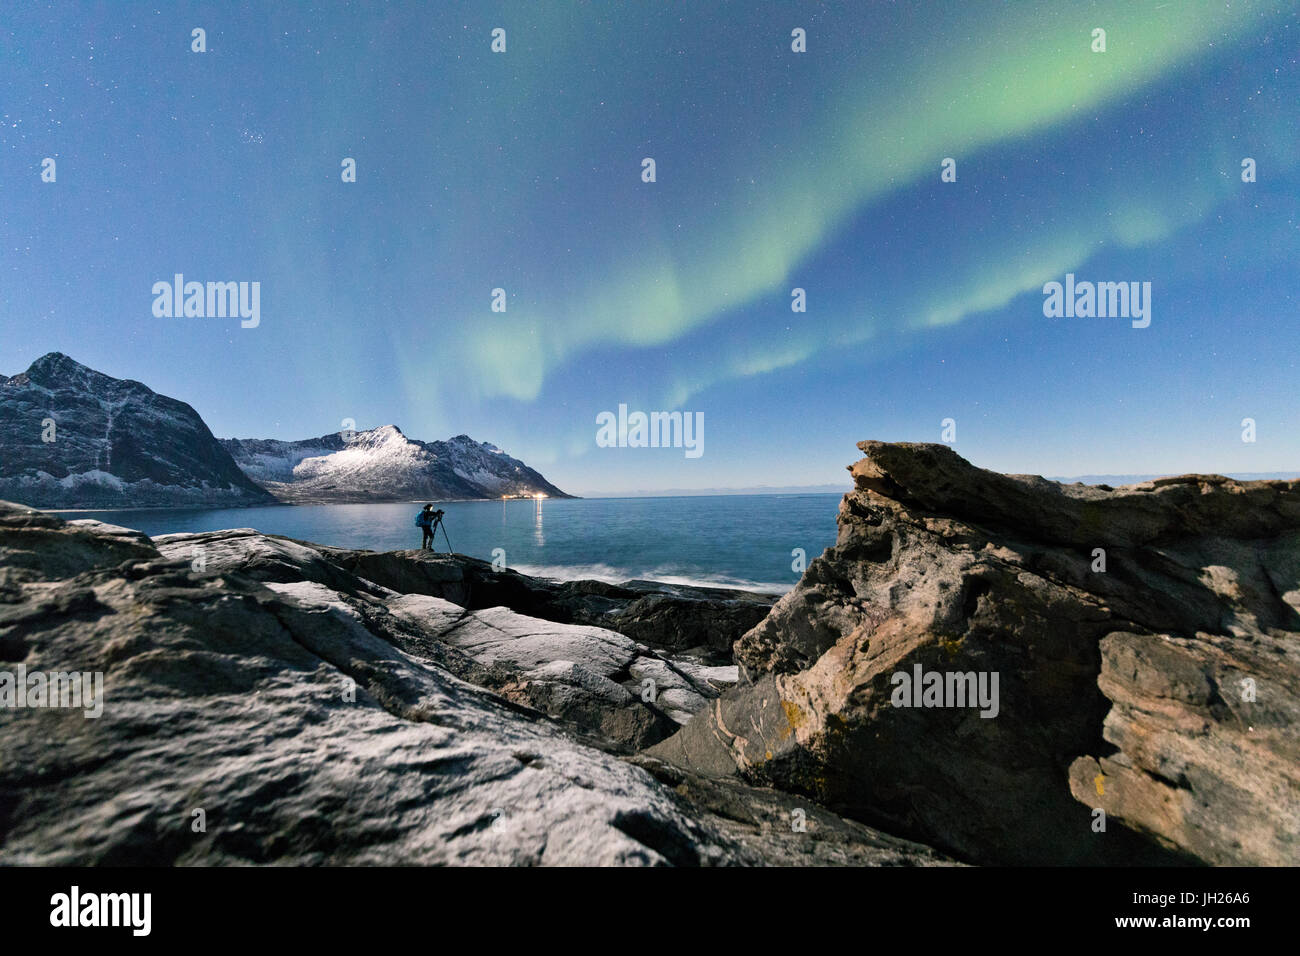 Fotografo sotto le stelle e Northern Lights circondato da picchi rocciosi e mare ghiacciato, Tungeneset, Senja, Troms, Norvegia Foto Stock